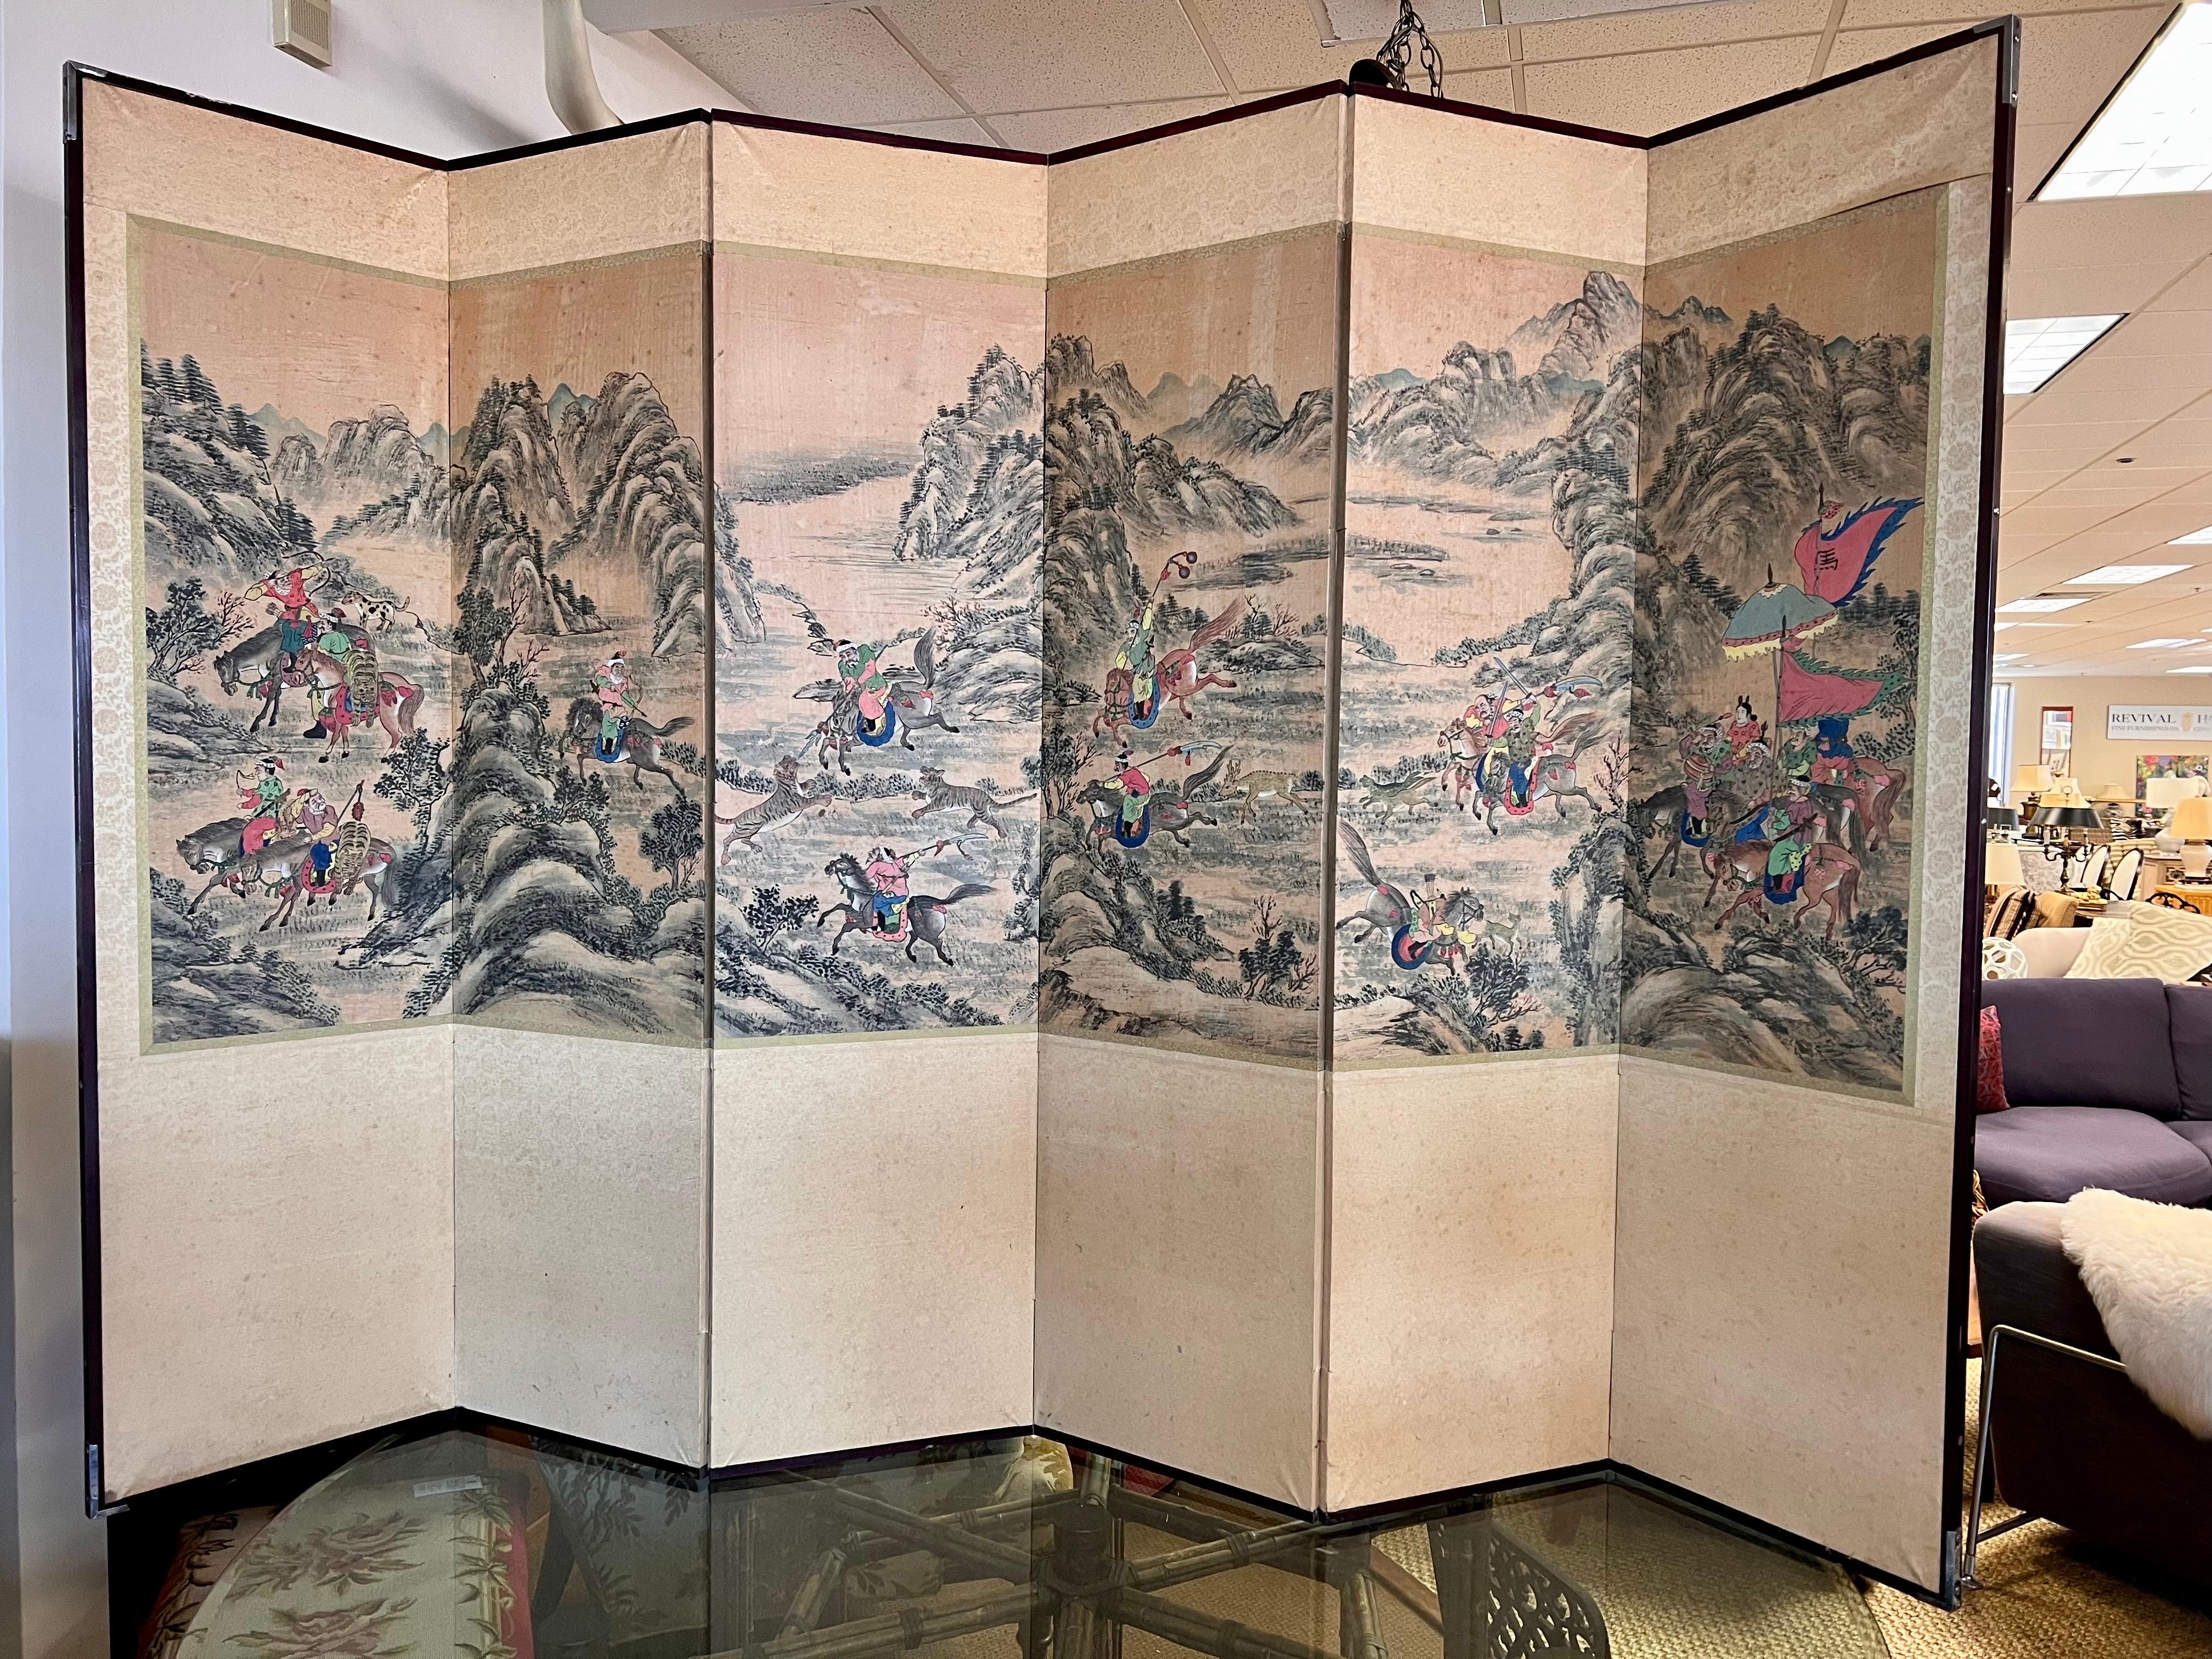 Paravent chinois exquis à six panneaux pour séparation de pièces, présentant des paysages complexes peints à la main avec des scènes de combat.  des guerriers à cheval. Un chef-d'œuvre visuel époustouflant.